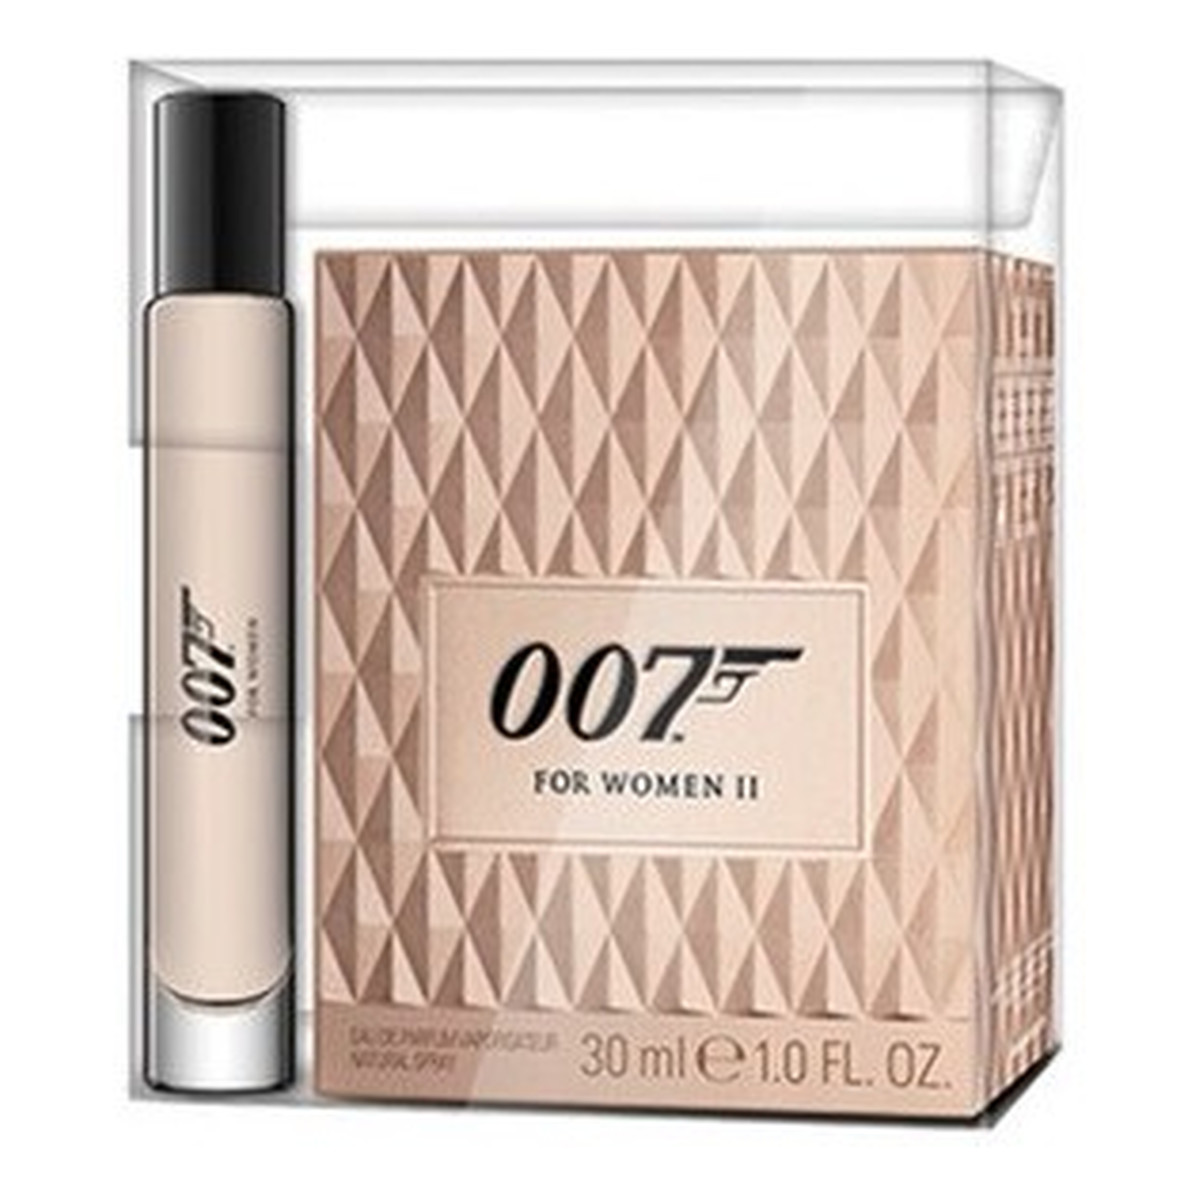 James Bond 007 For Women II zestaw prezentowy woda perfumowana 30ml + woda perfumowana w kulce 7.4ml